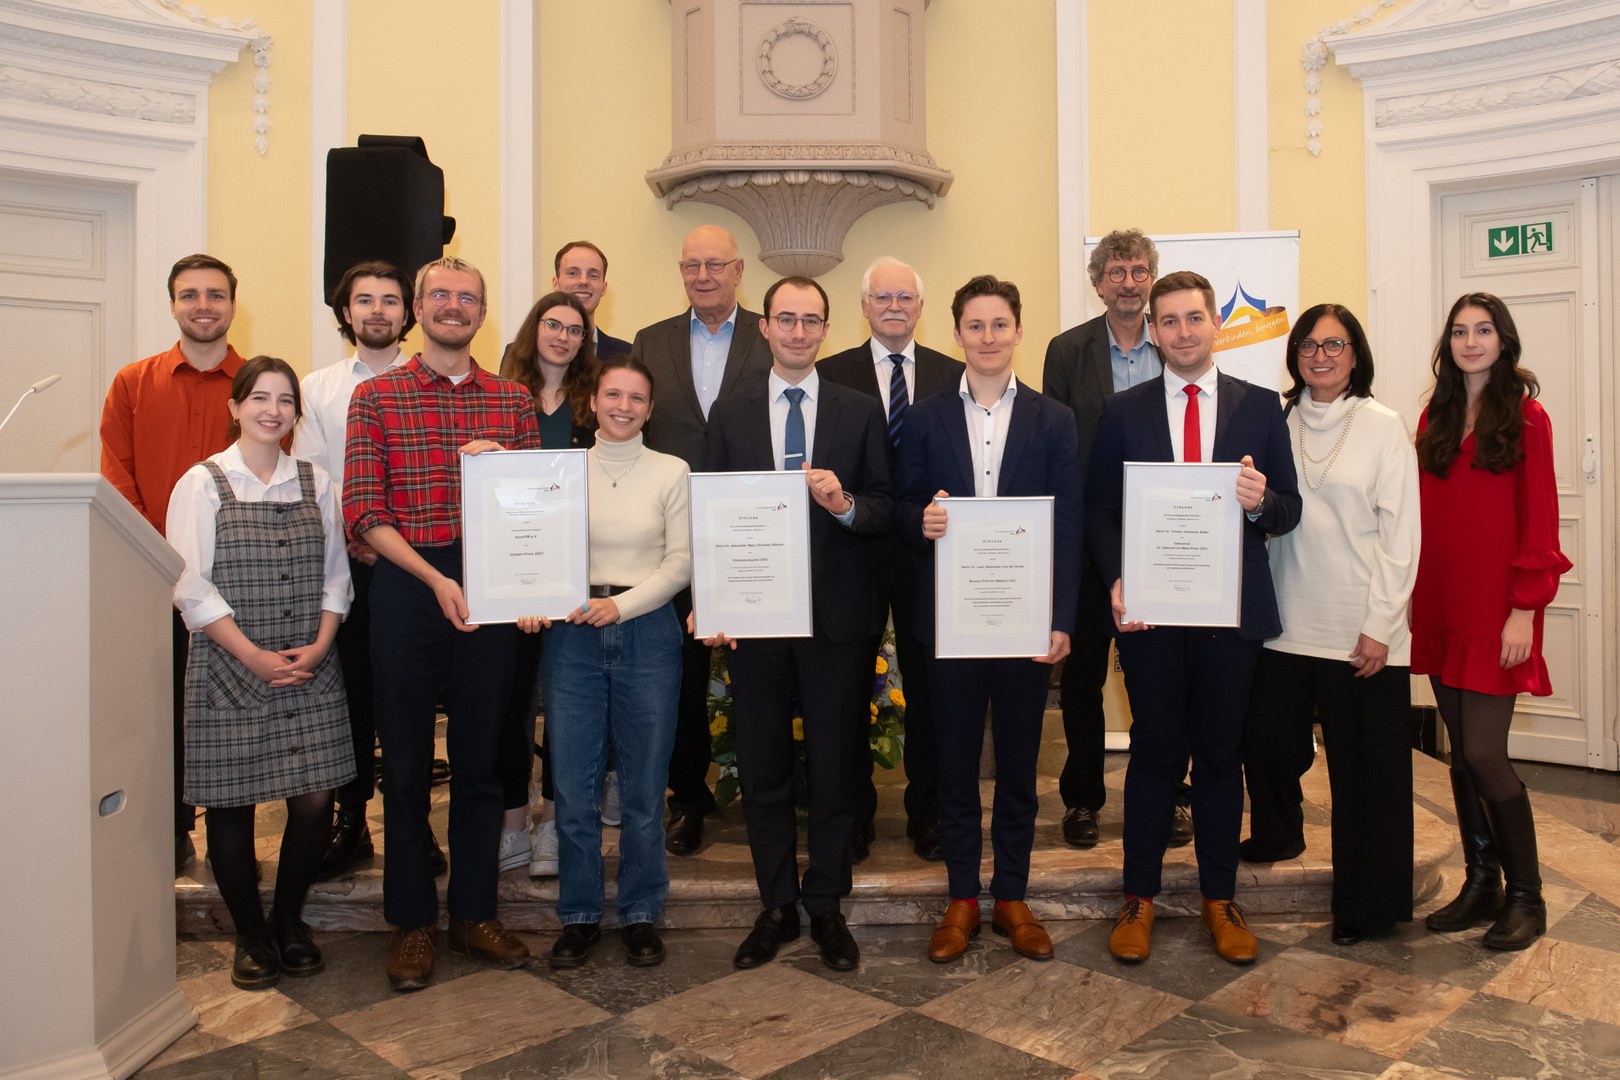 Die Universitätsgesellschaft Bonn hat herausragende Dissertationen und studentisches Engagement geehrt